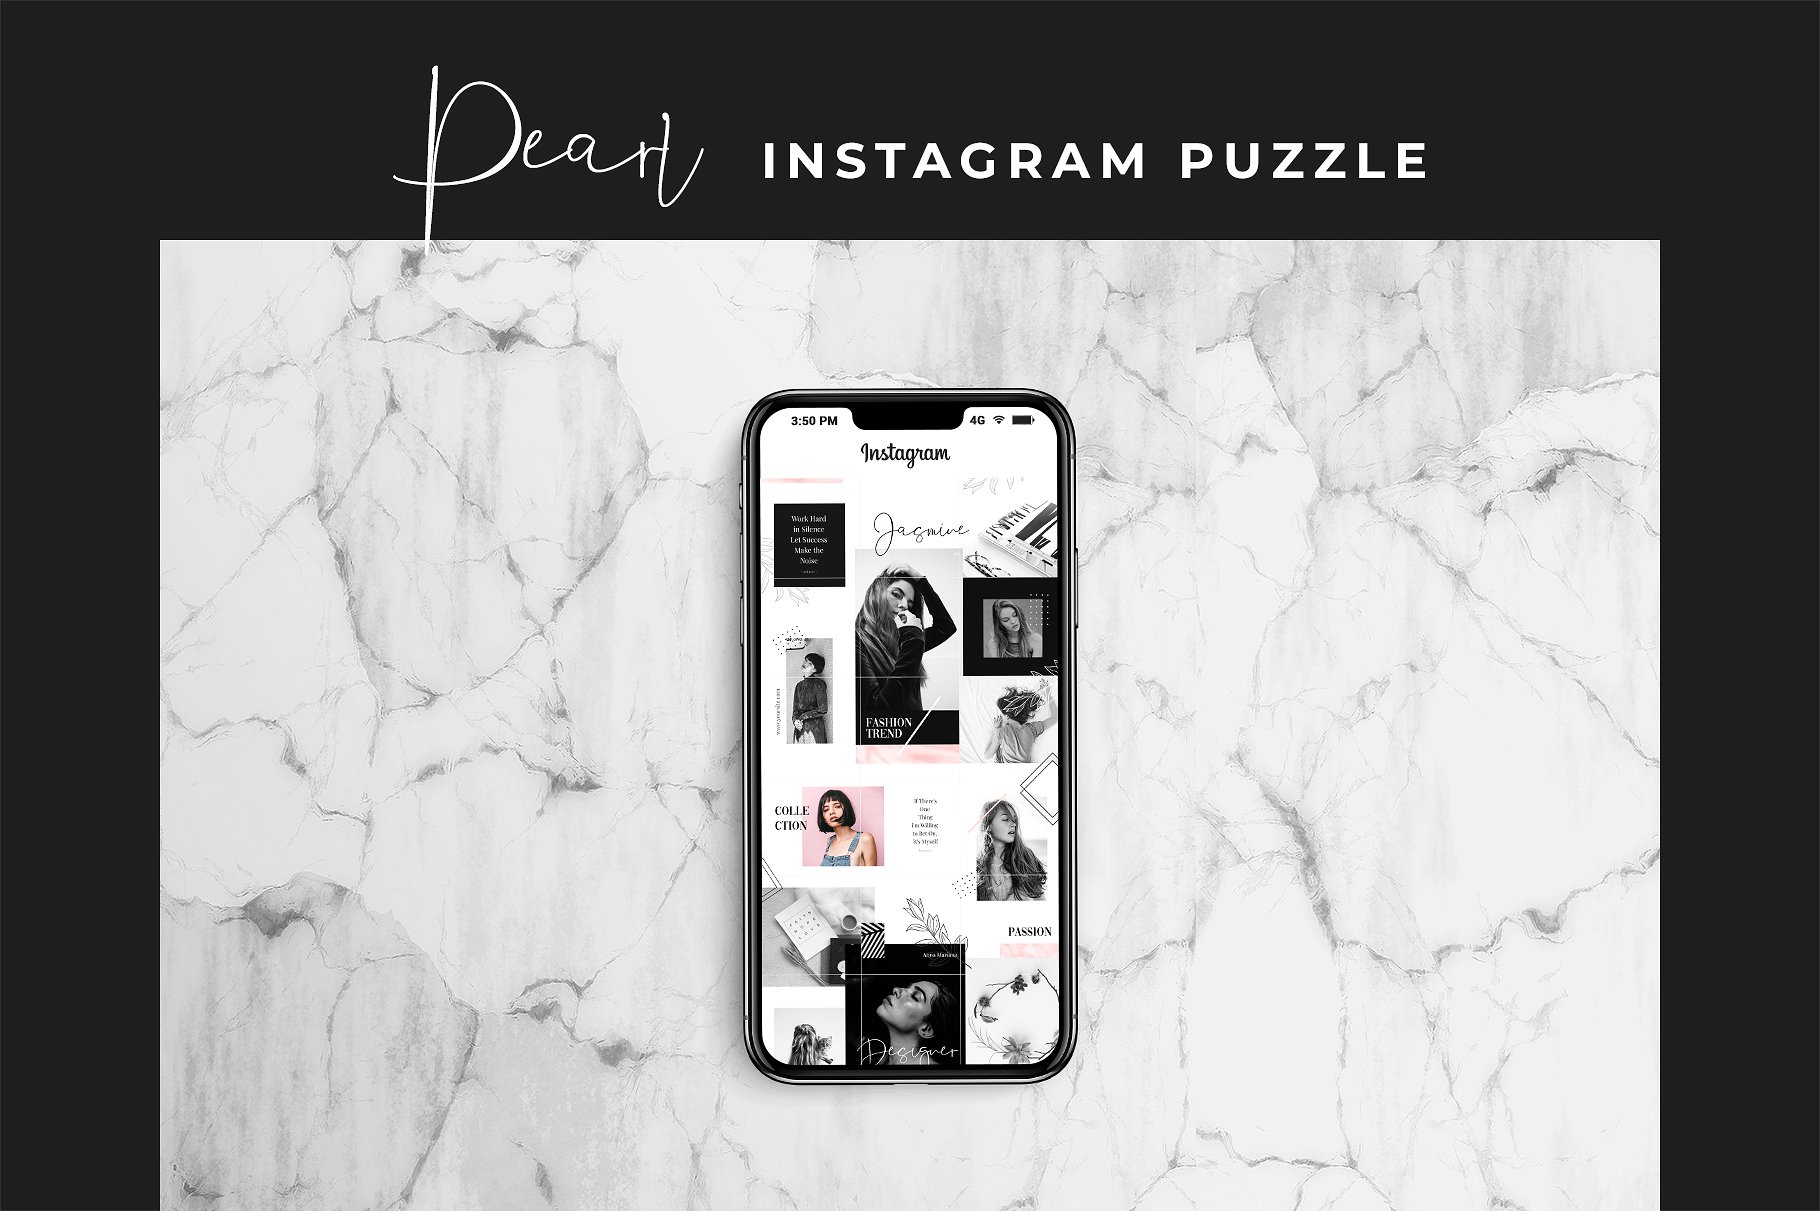 现代黑色主题的instagram社交媒体模板素材库精选 Instagram Puzzle – Pearl [psd]插图(3)